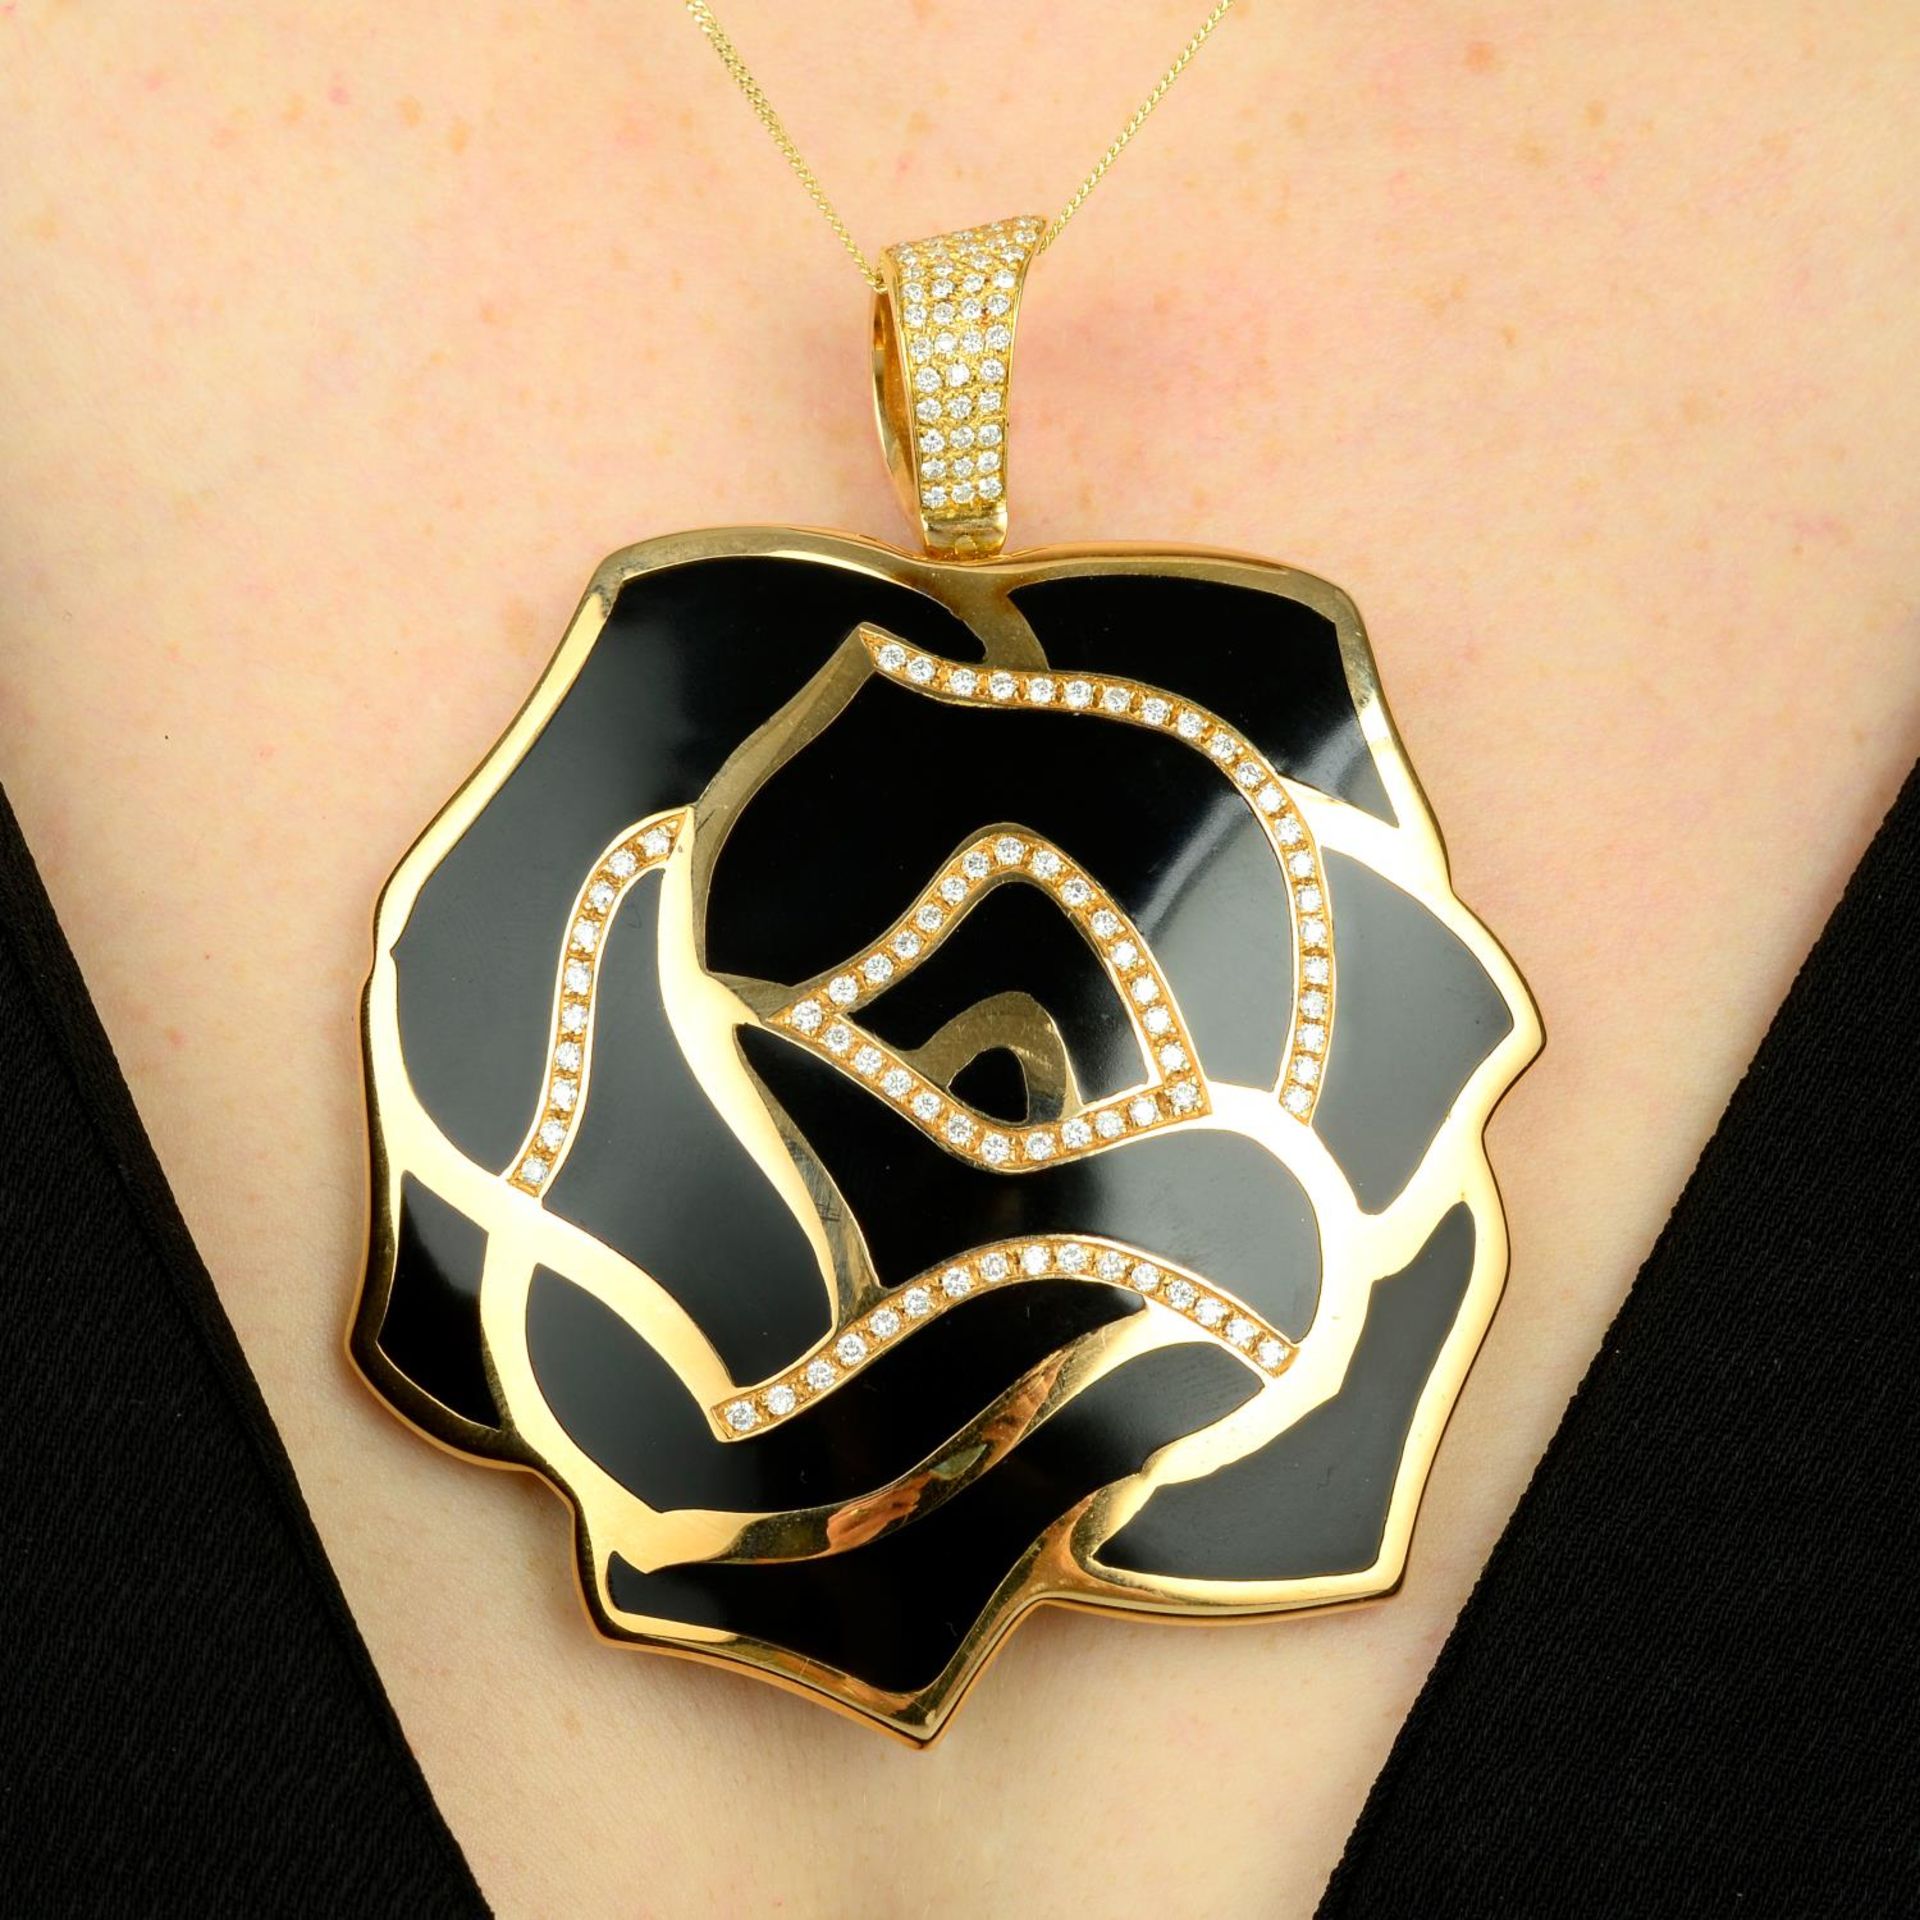 A large black enamel and pave-set diamond rose pendant,